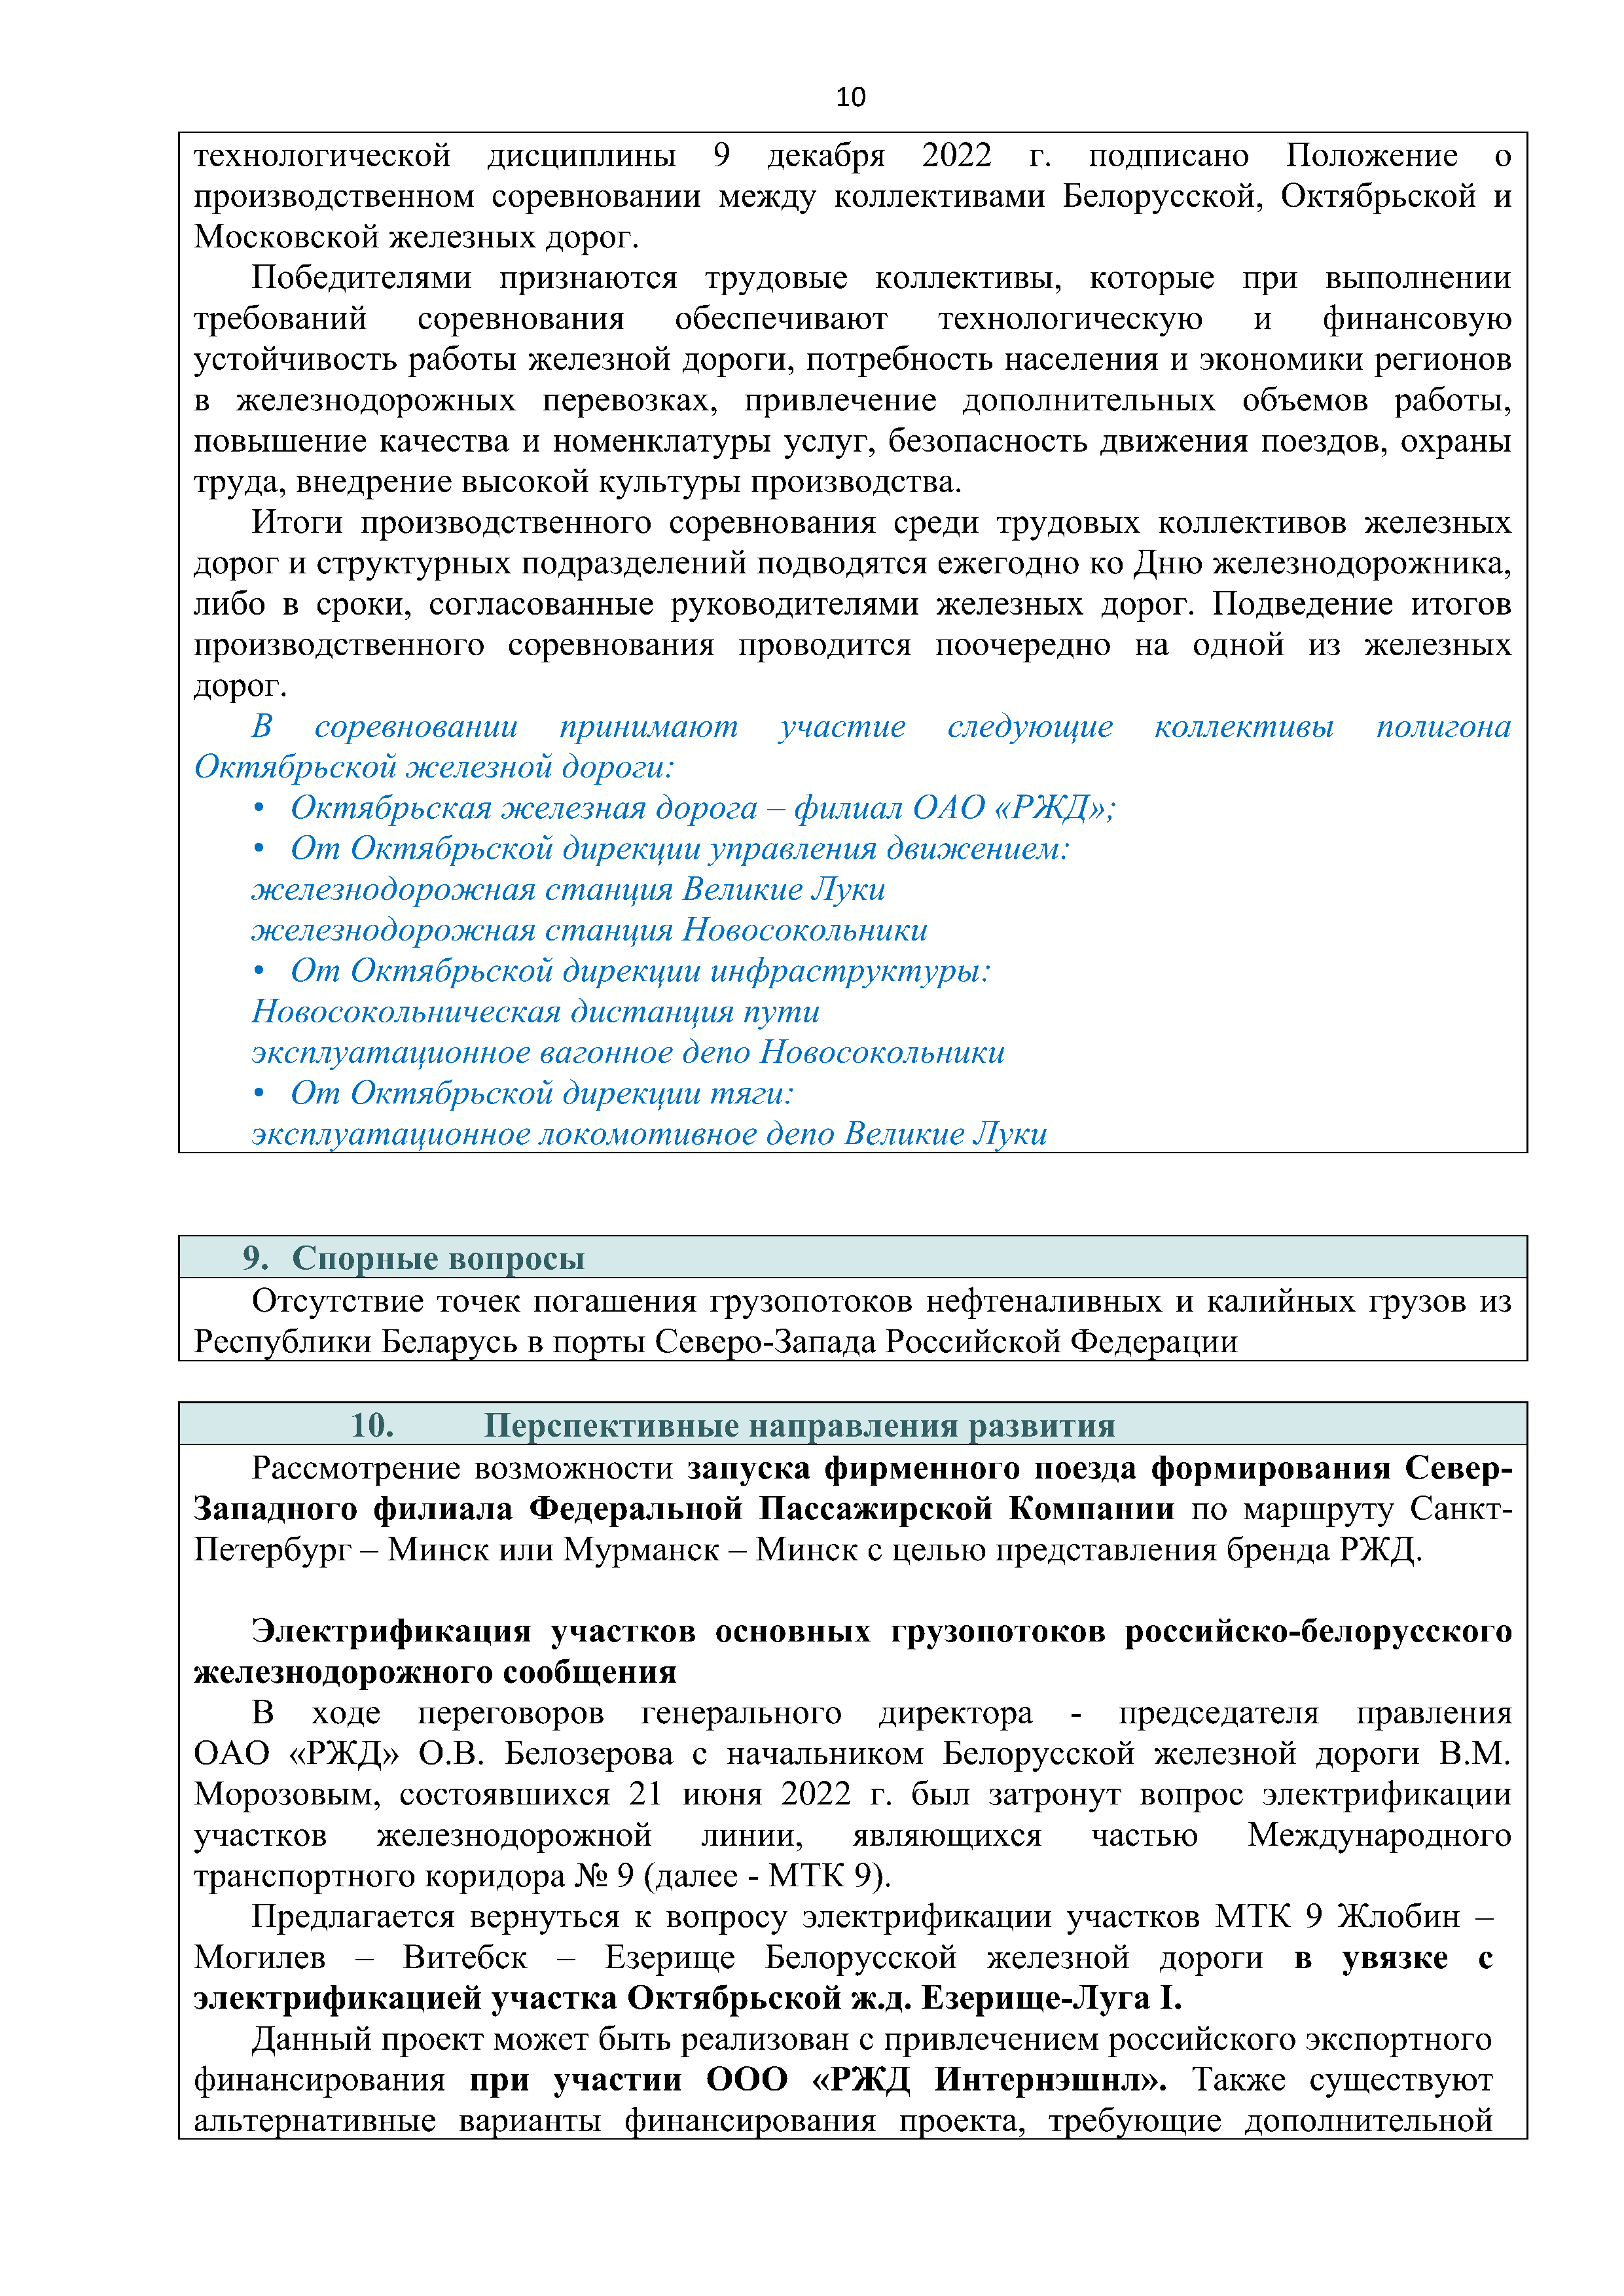 Справочная информация о взаимодействии ОАО «РЖД» с Республикой Беларусь (Страница 10)